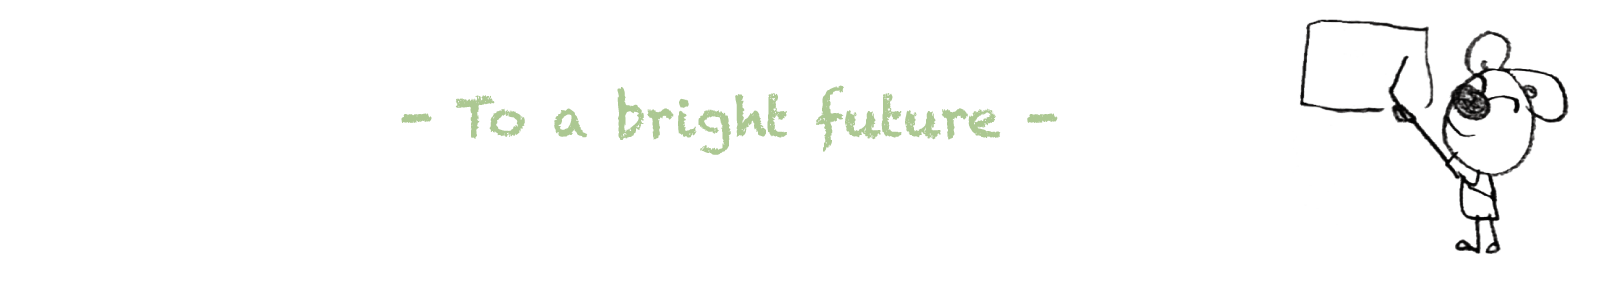 To a bright future